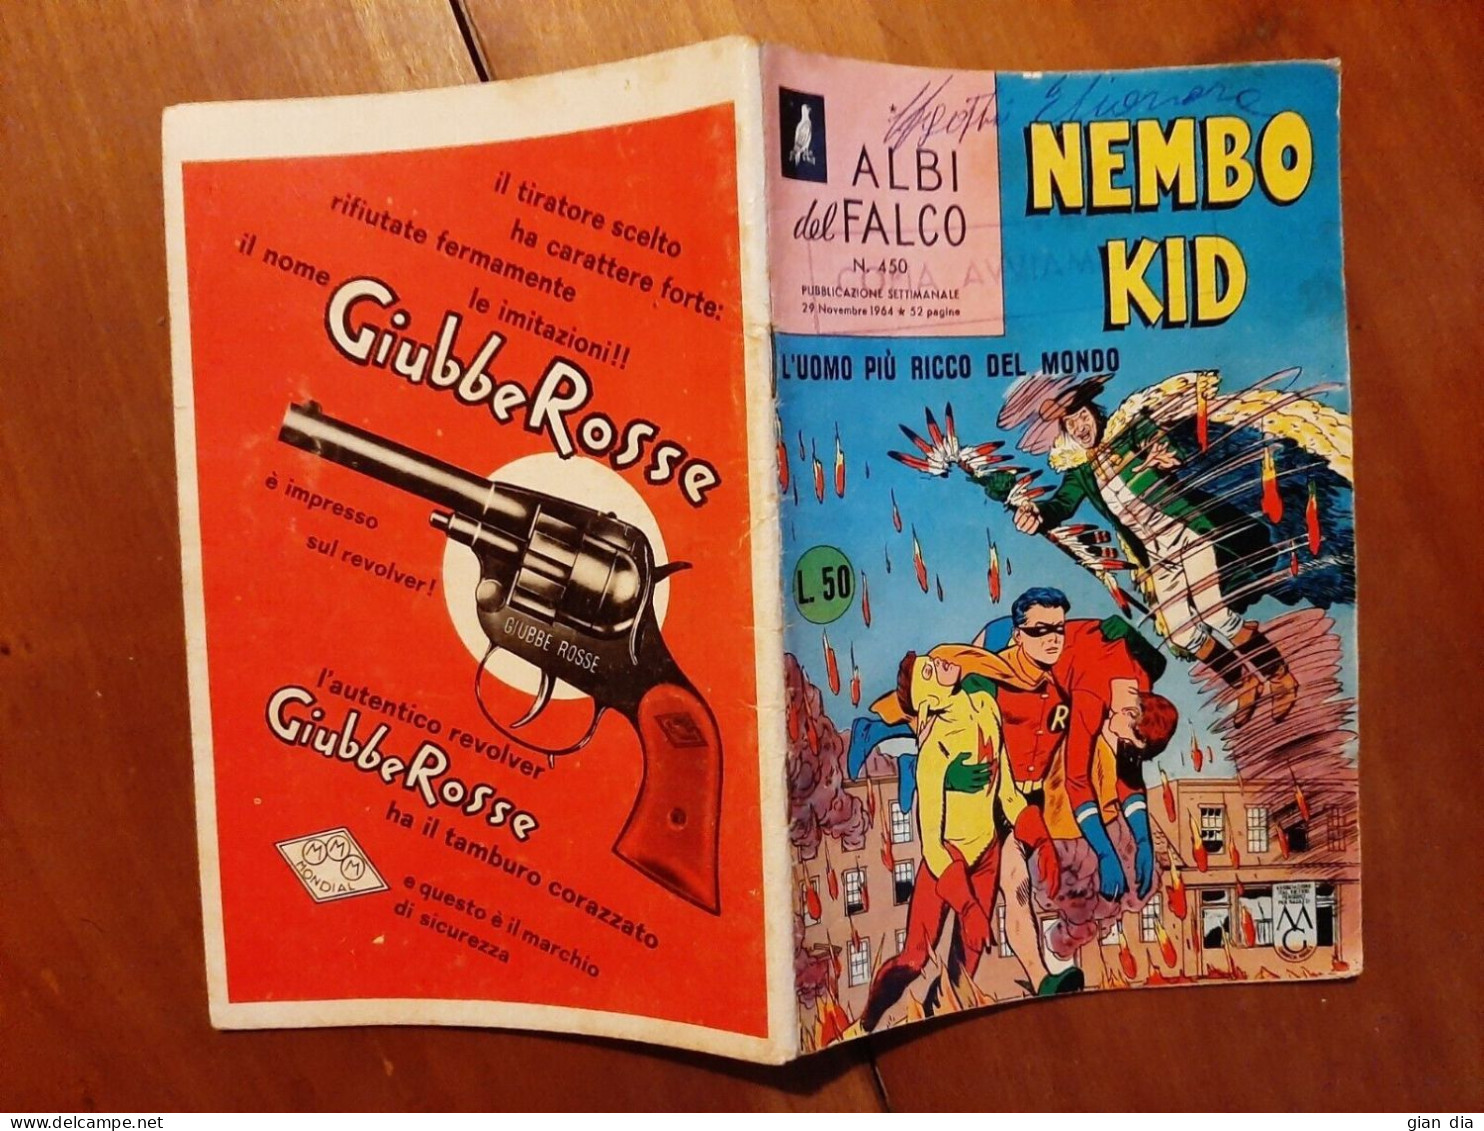 ALBI DEL FALCO NEMBO KID Ed.Mondadori: Numero 450 Del 29.11.64. Buono. - Primeras Ediciones